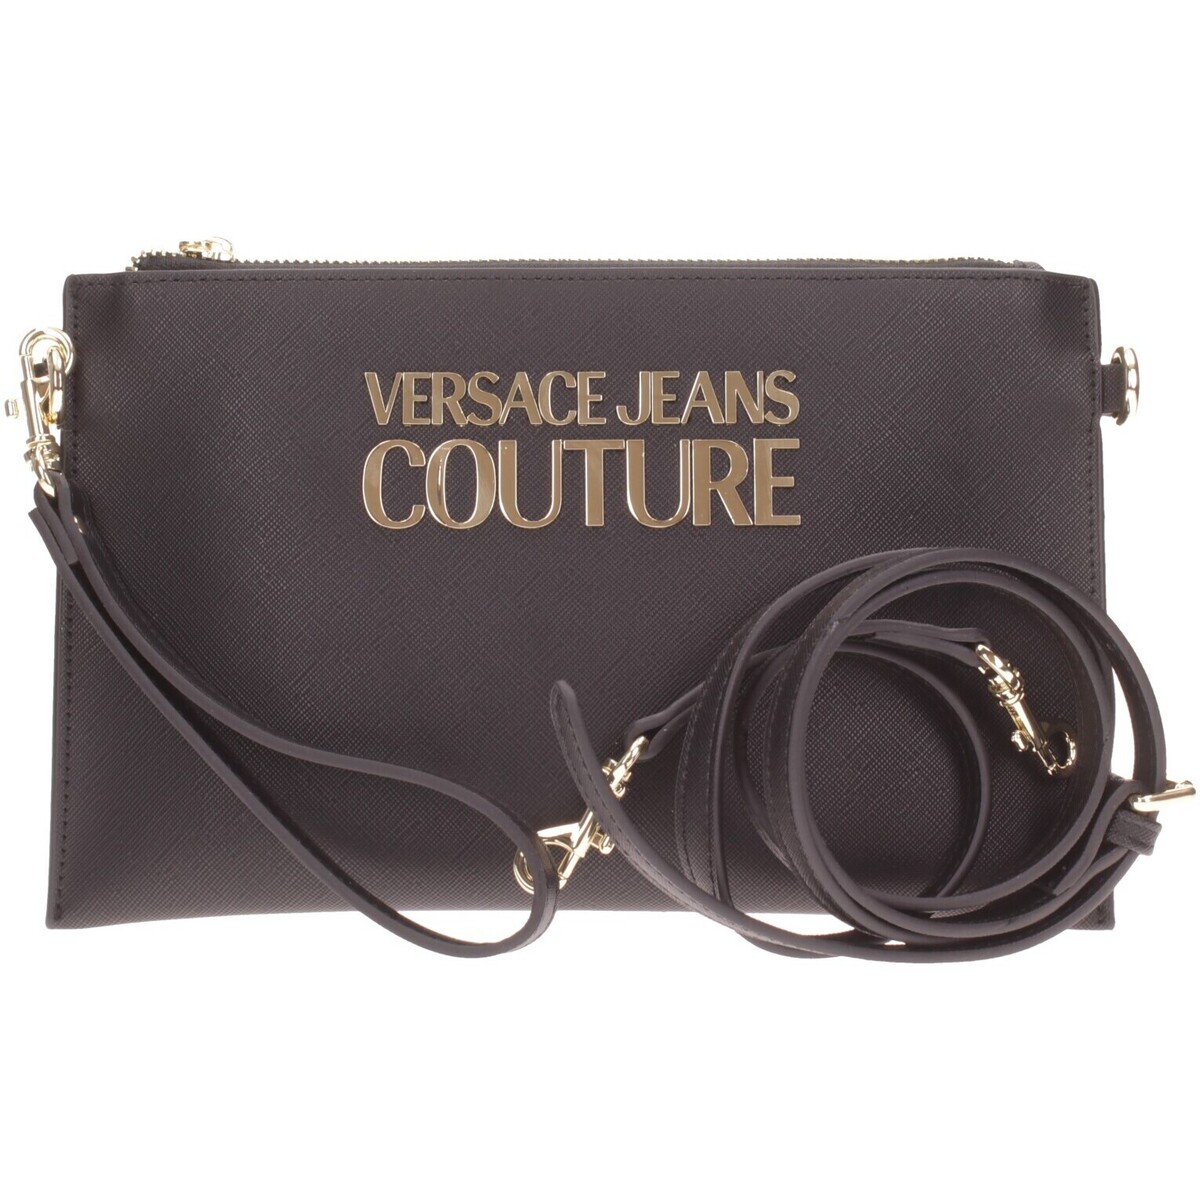 Versace Jeans Couture Noir hEp9Gb8Z